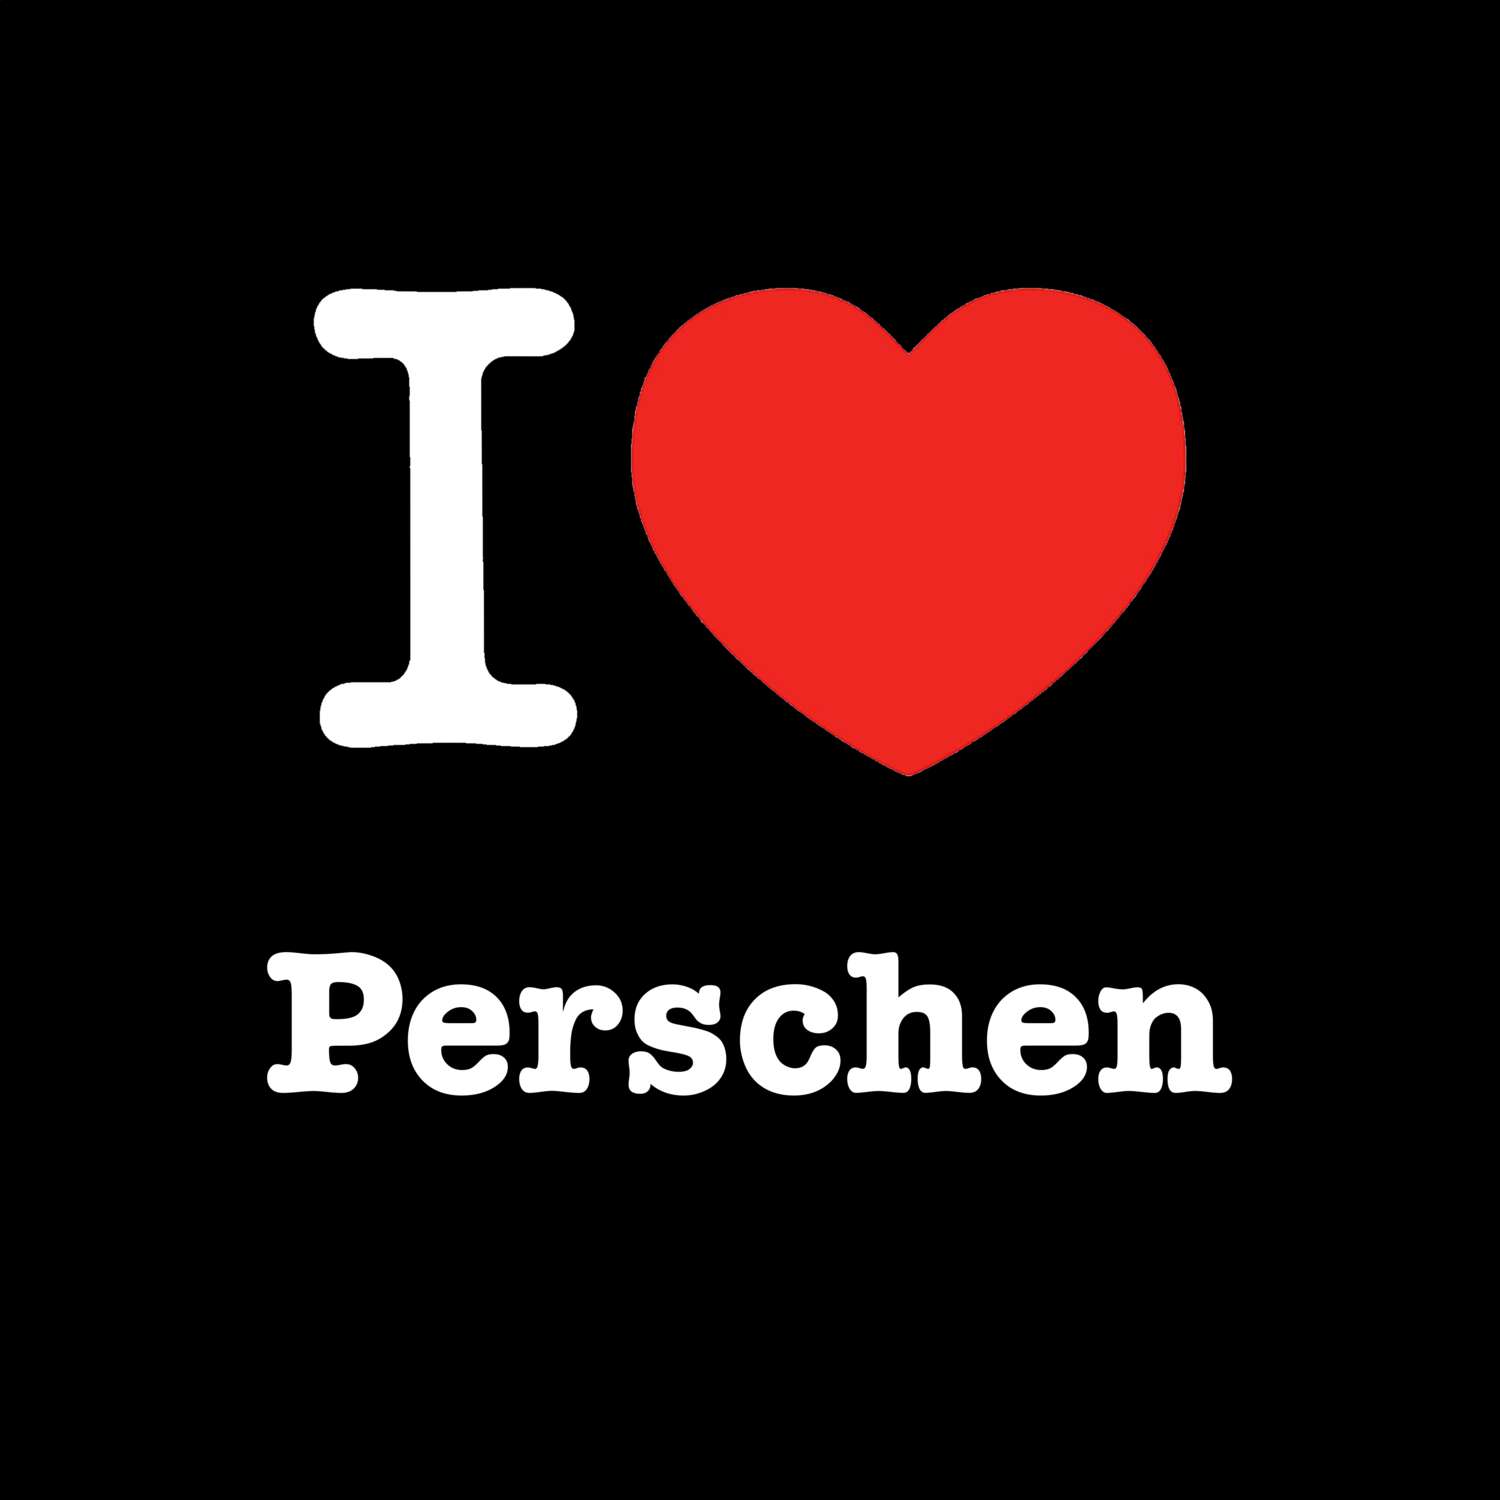 Perschen T-Shirt »I love«